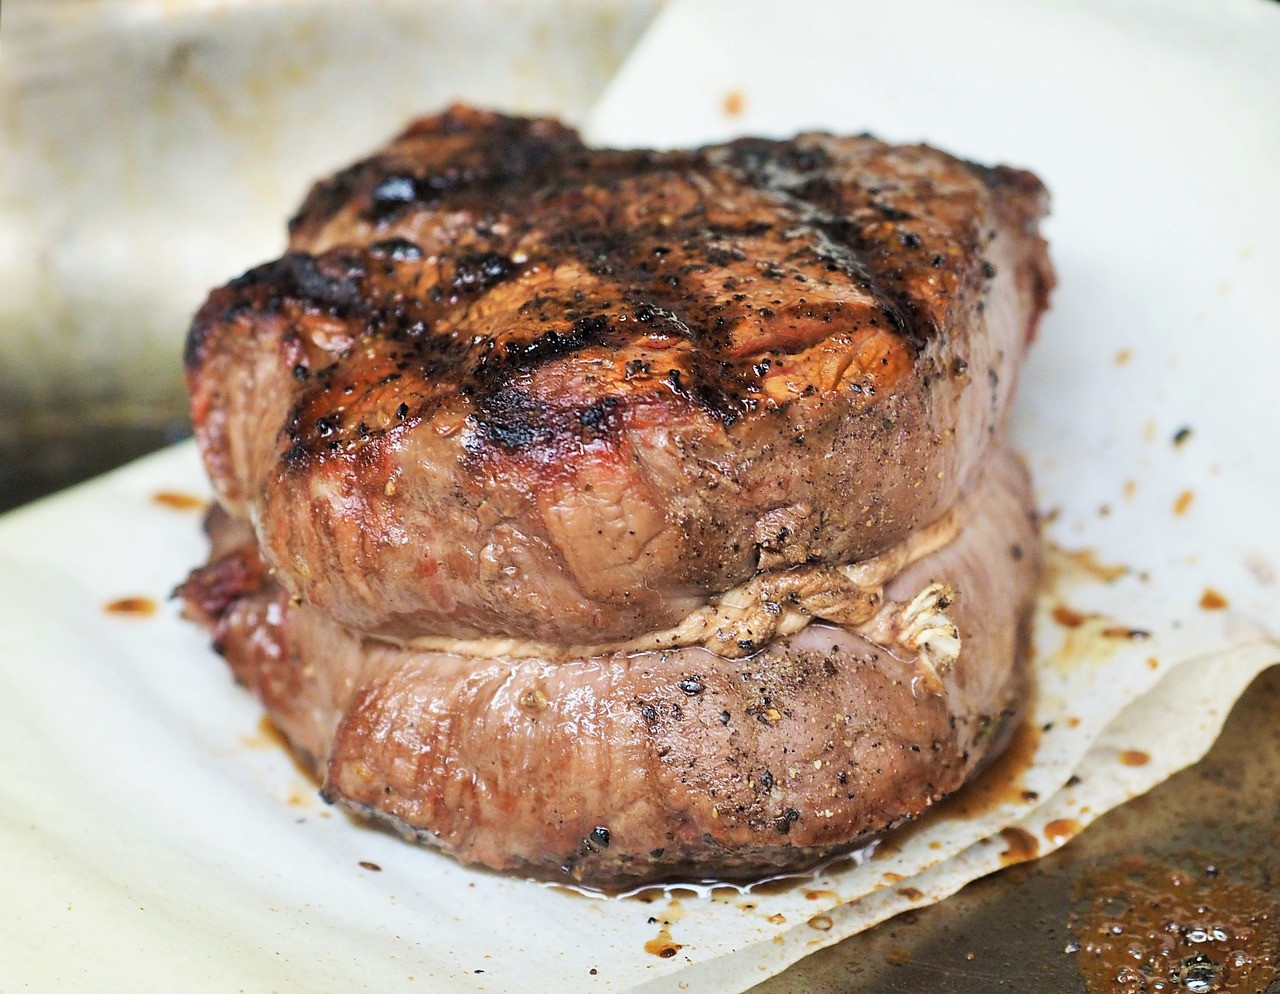 Kto to hovorí? Craig Koketsu, Quality Meats, New York
Prečo: "Filet je  druh chudého mäsa, preto sa aj inak „správa“ na grile, ak ho porovnávame s inými druhmi mäsa. Konkrétne mám na mysli mastnejšie druhy, akým je napríklad ribeye steak.
Obsahuje tuk, ktorý zabezpečí, aby sa mäso dostatočne ugrilovalo ako zvonka. Potom zostane šťavnaté. Zjednodušene povedané, zvonku sa frituje a zvnútra sa varí. 
Filet Mignon je lepšie pripraviť  na panvici, konkrétne liatinove. Tam sa prepečie rovnomerne  a chuť je úplne odlišná. Prípravou na panvici dosiahnete rovnomernú ružovú farbu v celom steaku. Vo všeobecnosti platí to isté aj pre ostatné druhy chudšieho mäsa."